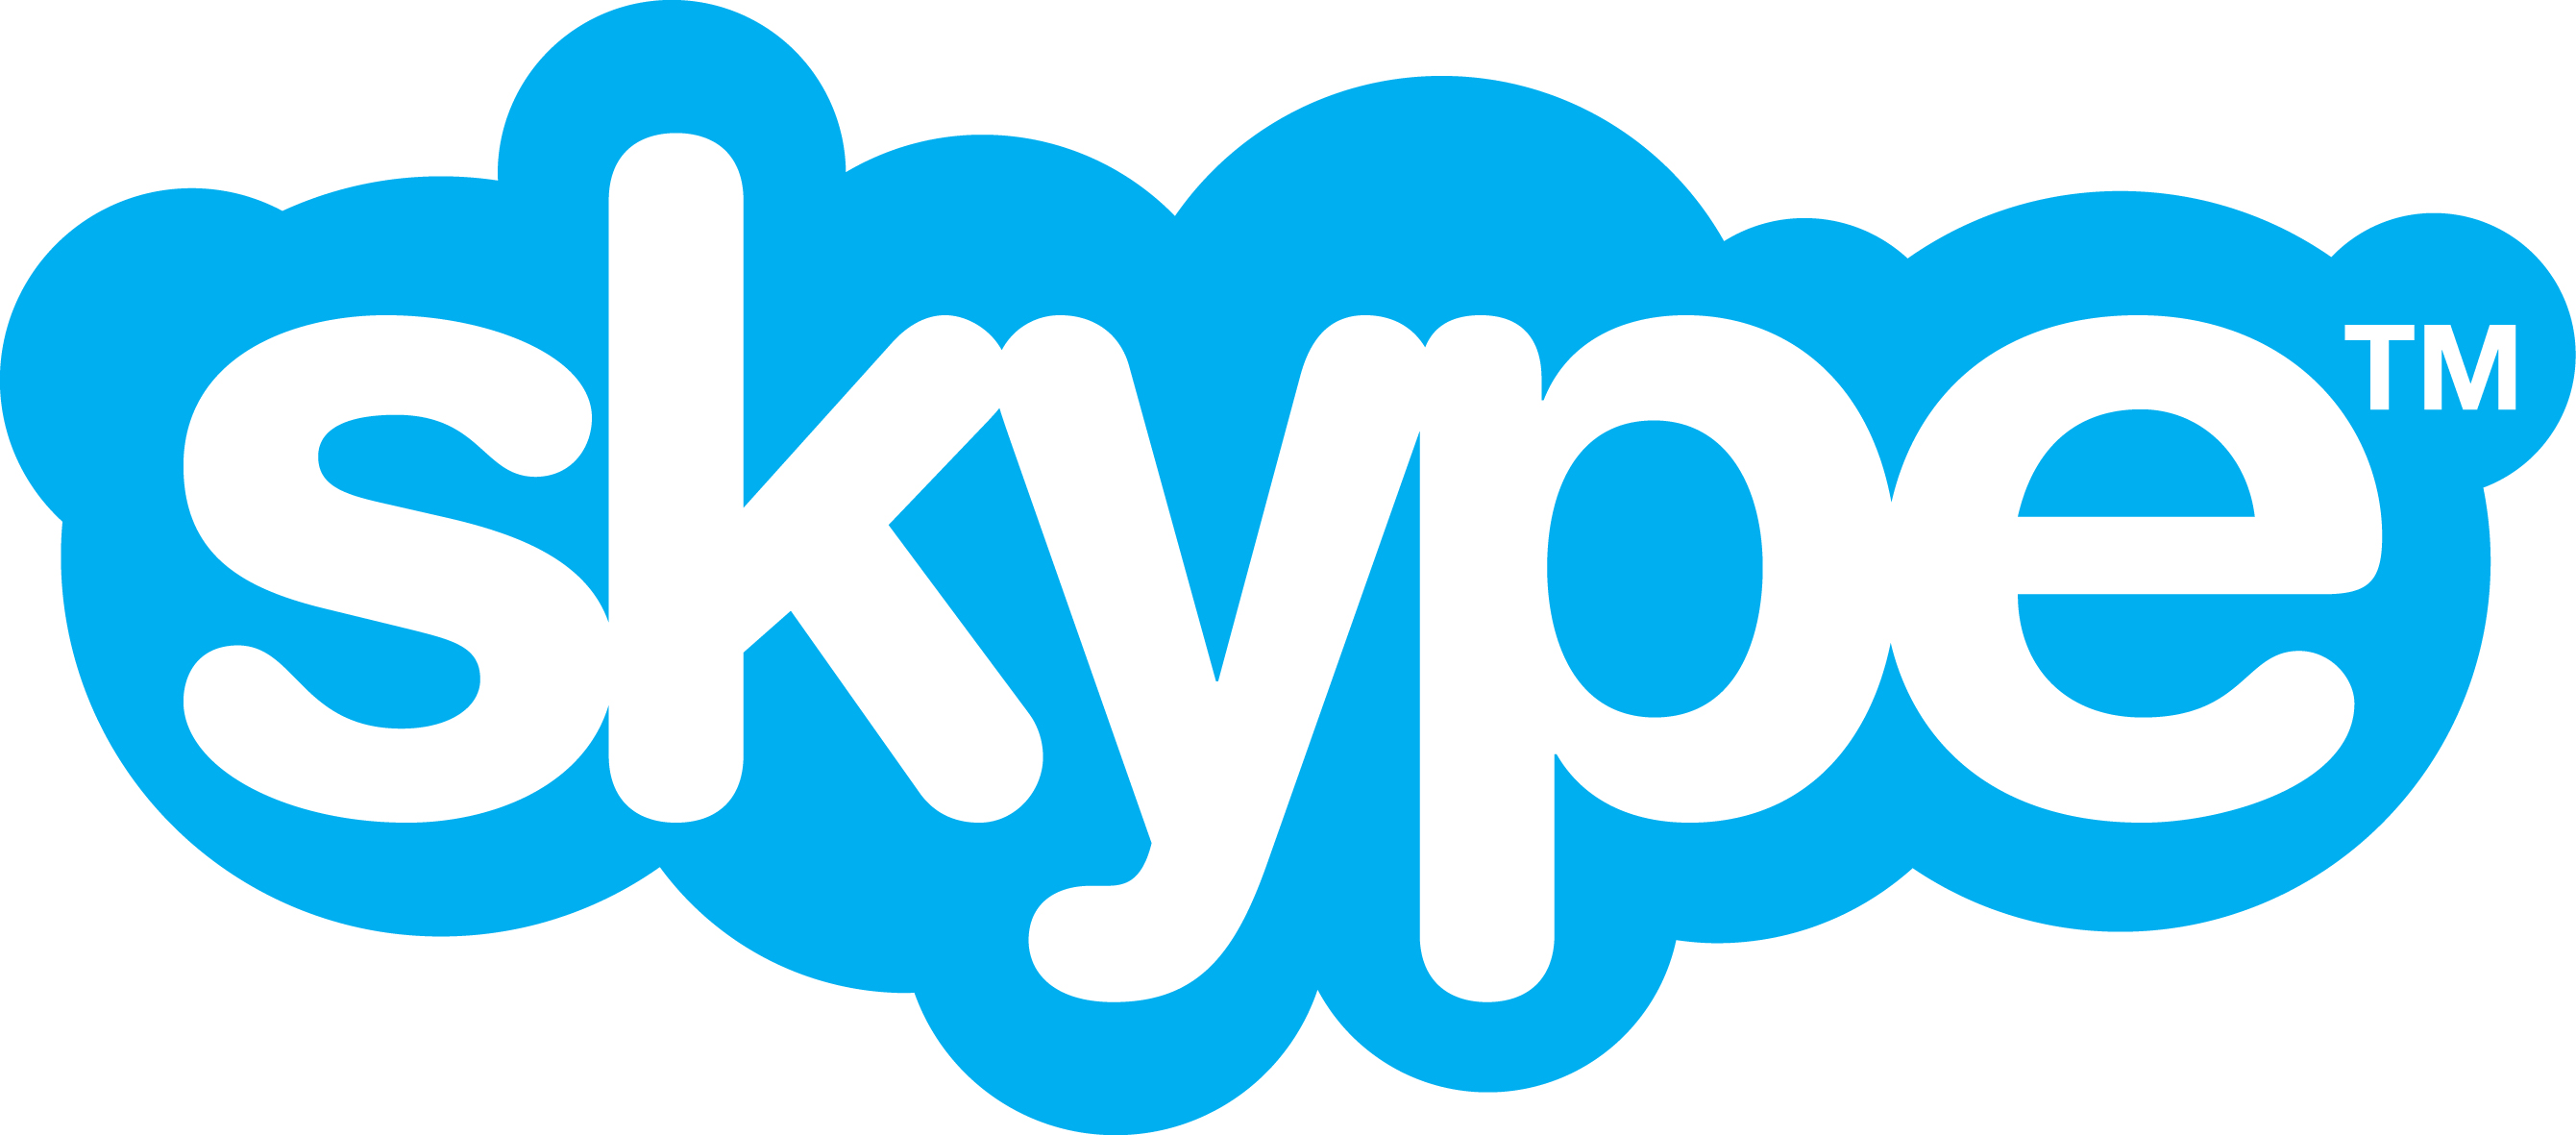 skype-istallet-for-mobilsamtal